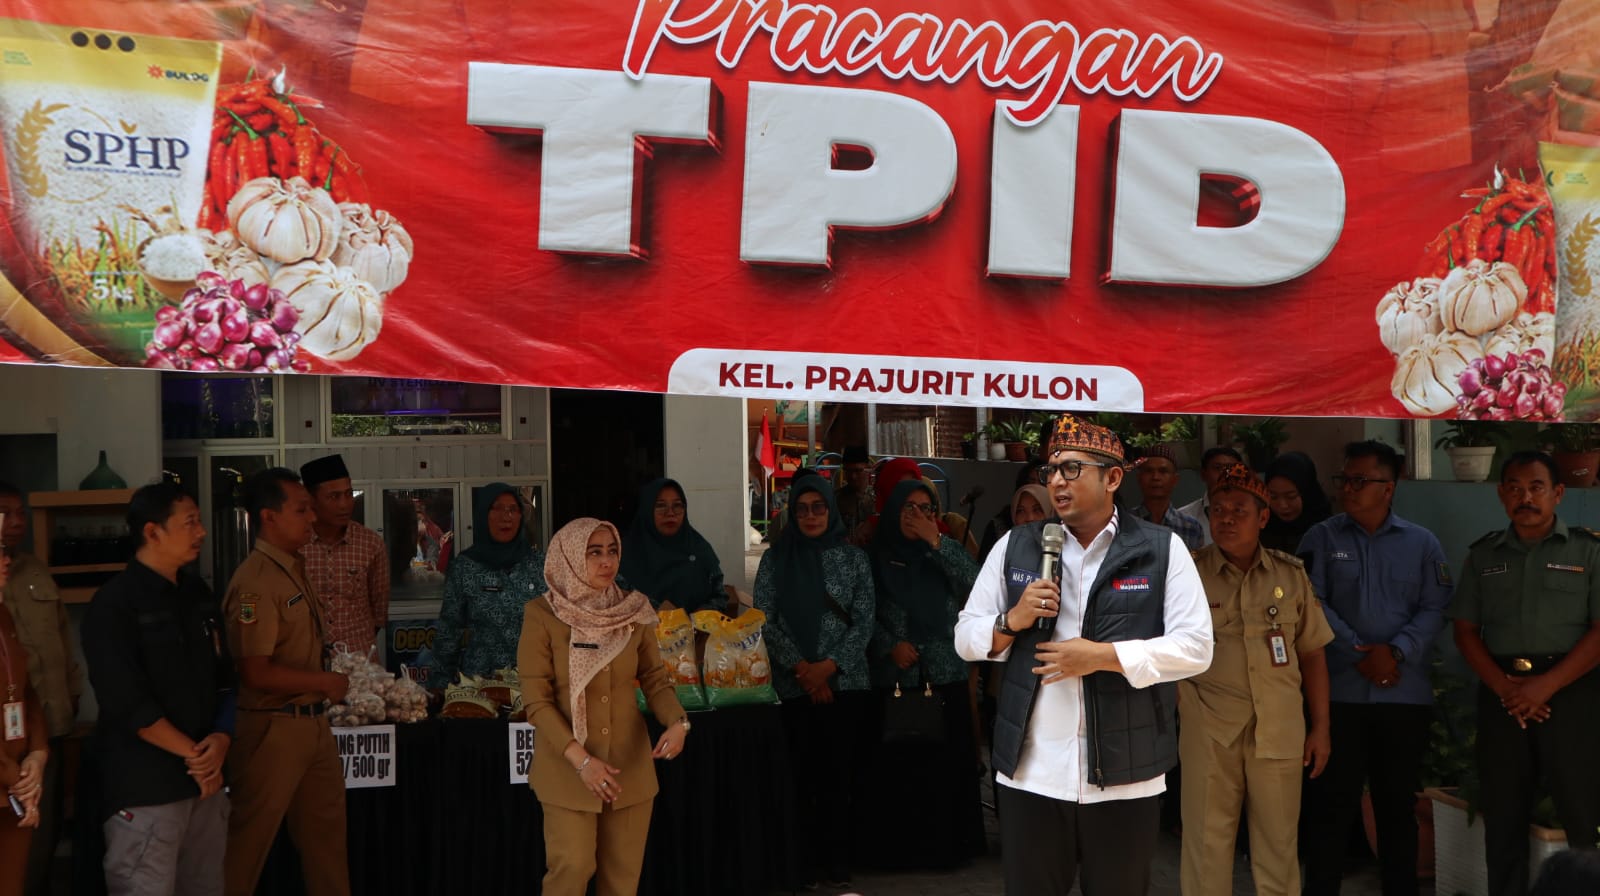 Mengatasi Inflasi, Pj Wali Kota Mojokerto Kembali Resmikan TPID Pracangan